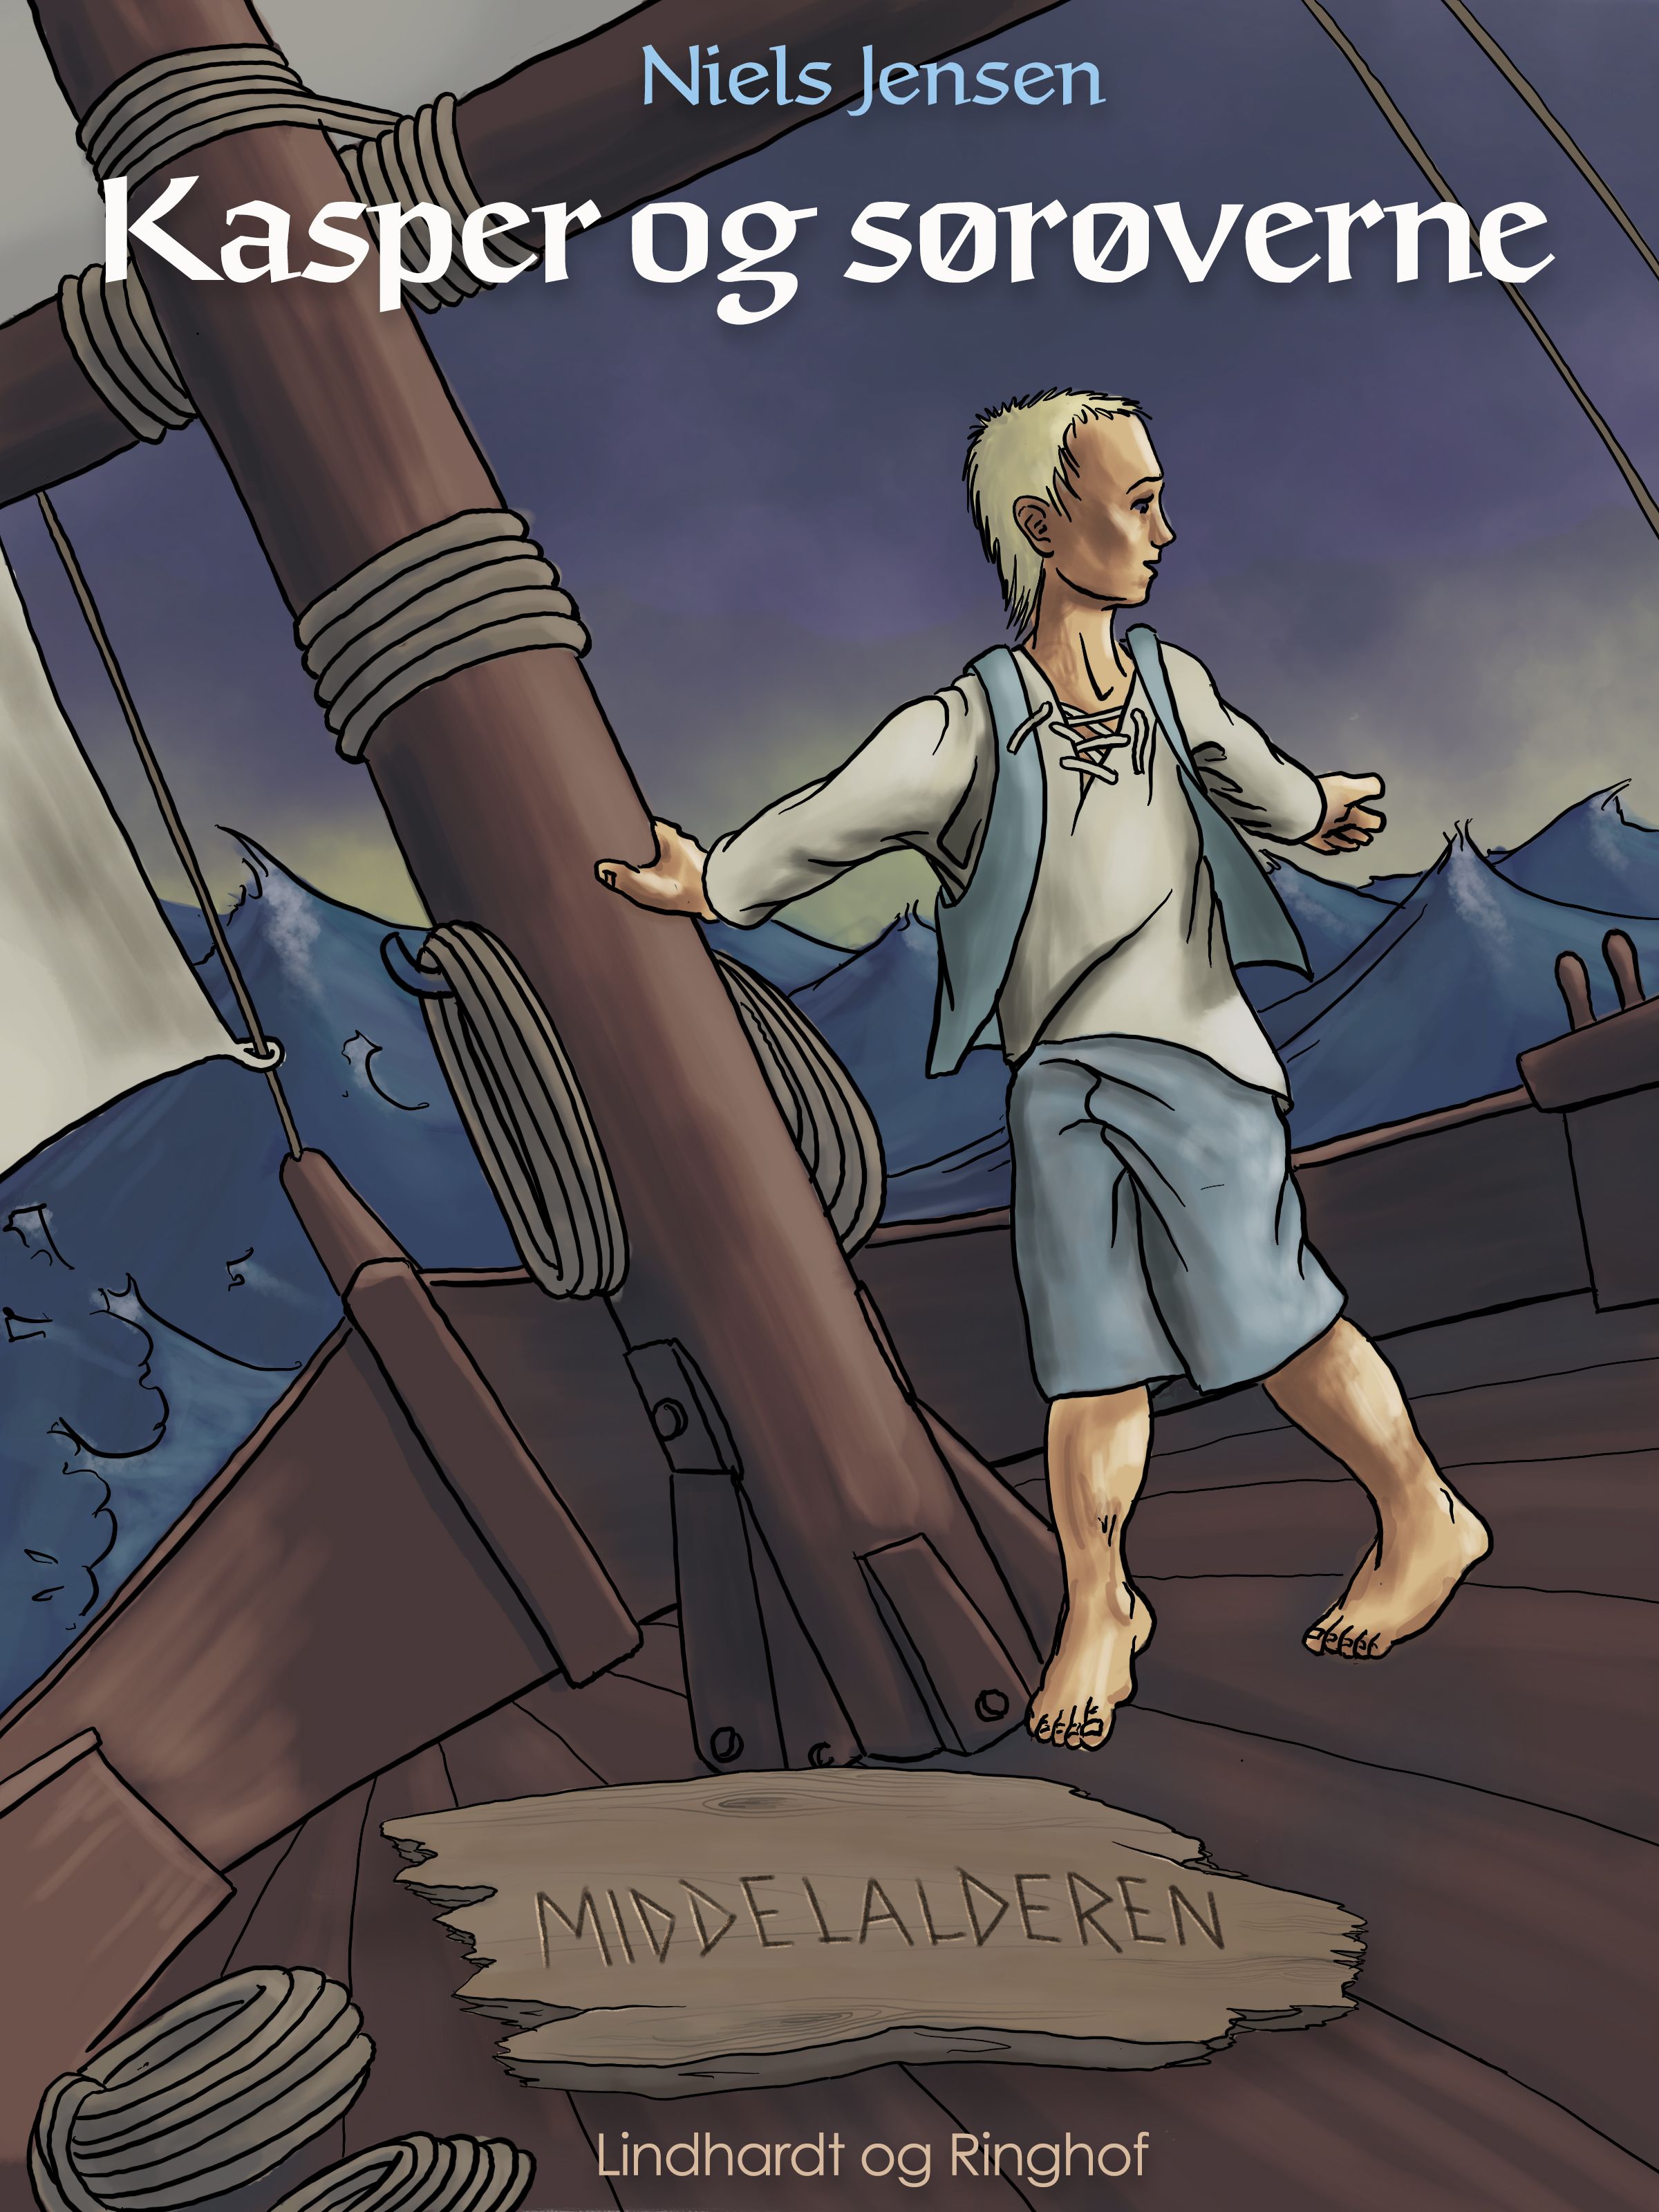 Middelalderen: Kasper og sørøverne, e-bok av Niels Jensen